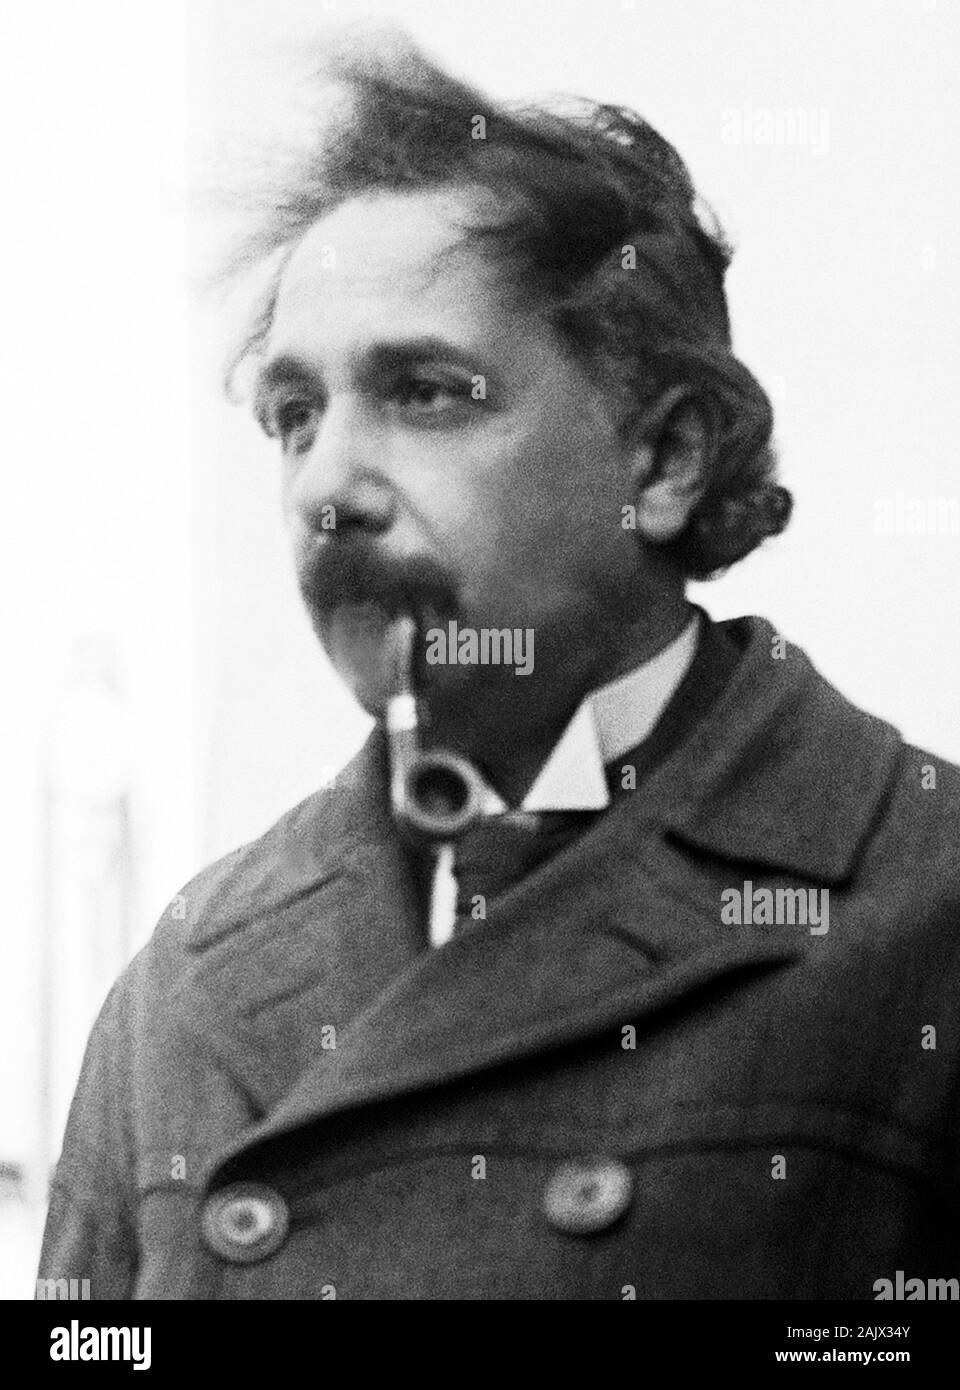 Vintage Foto der theoretischen Physiker Albert Einstein (1879 - 1955). Foto von Bain Aktuelles Service im April 1921 bei seiner Ankunft in New York getroffen. Stockfoto